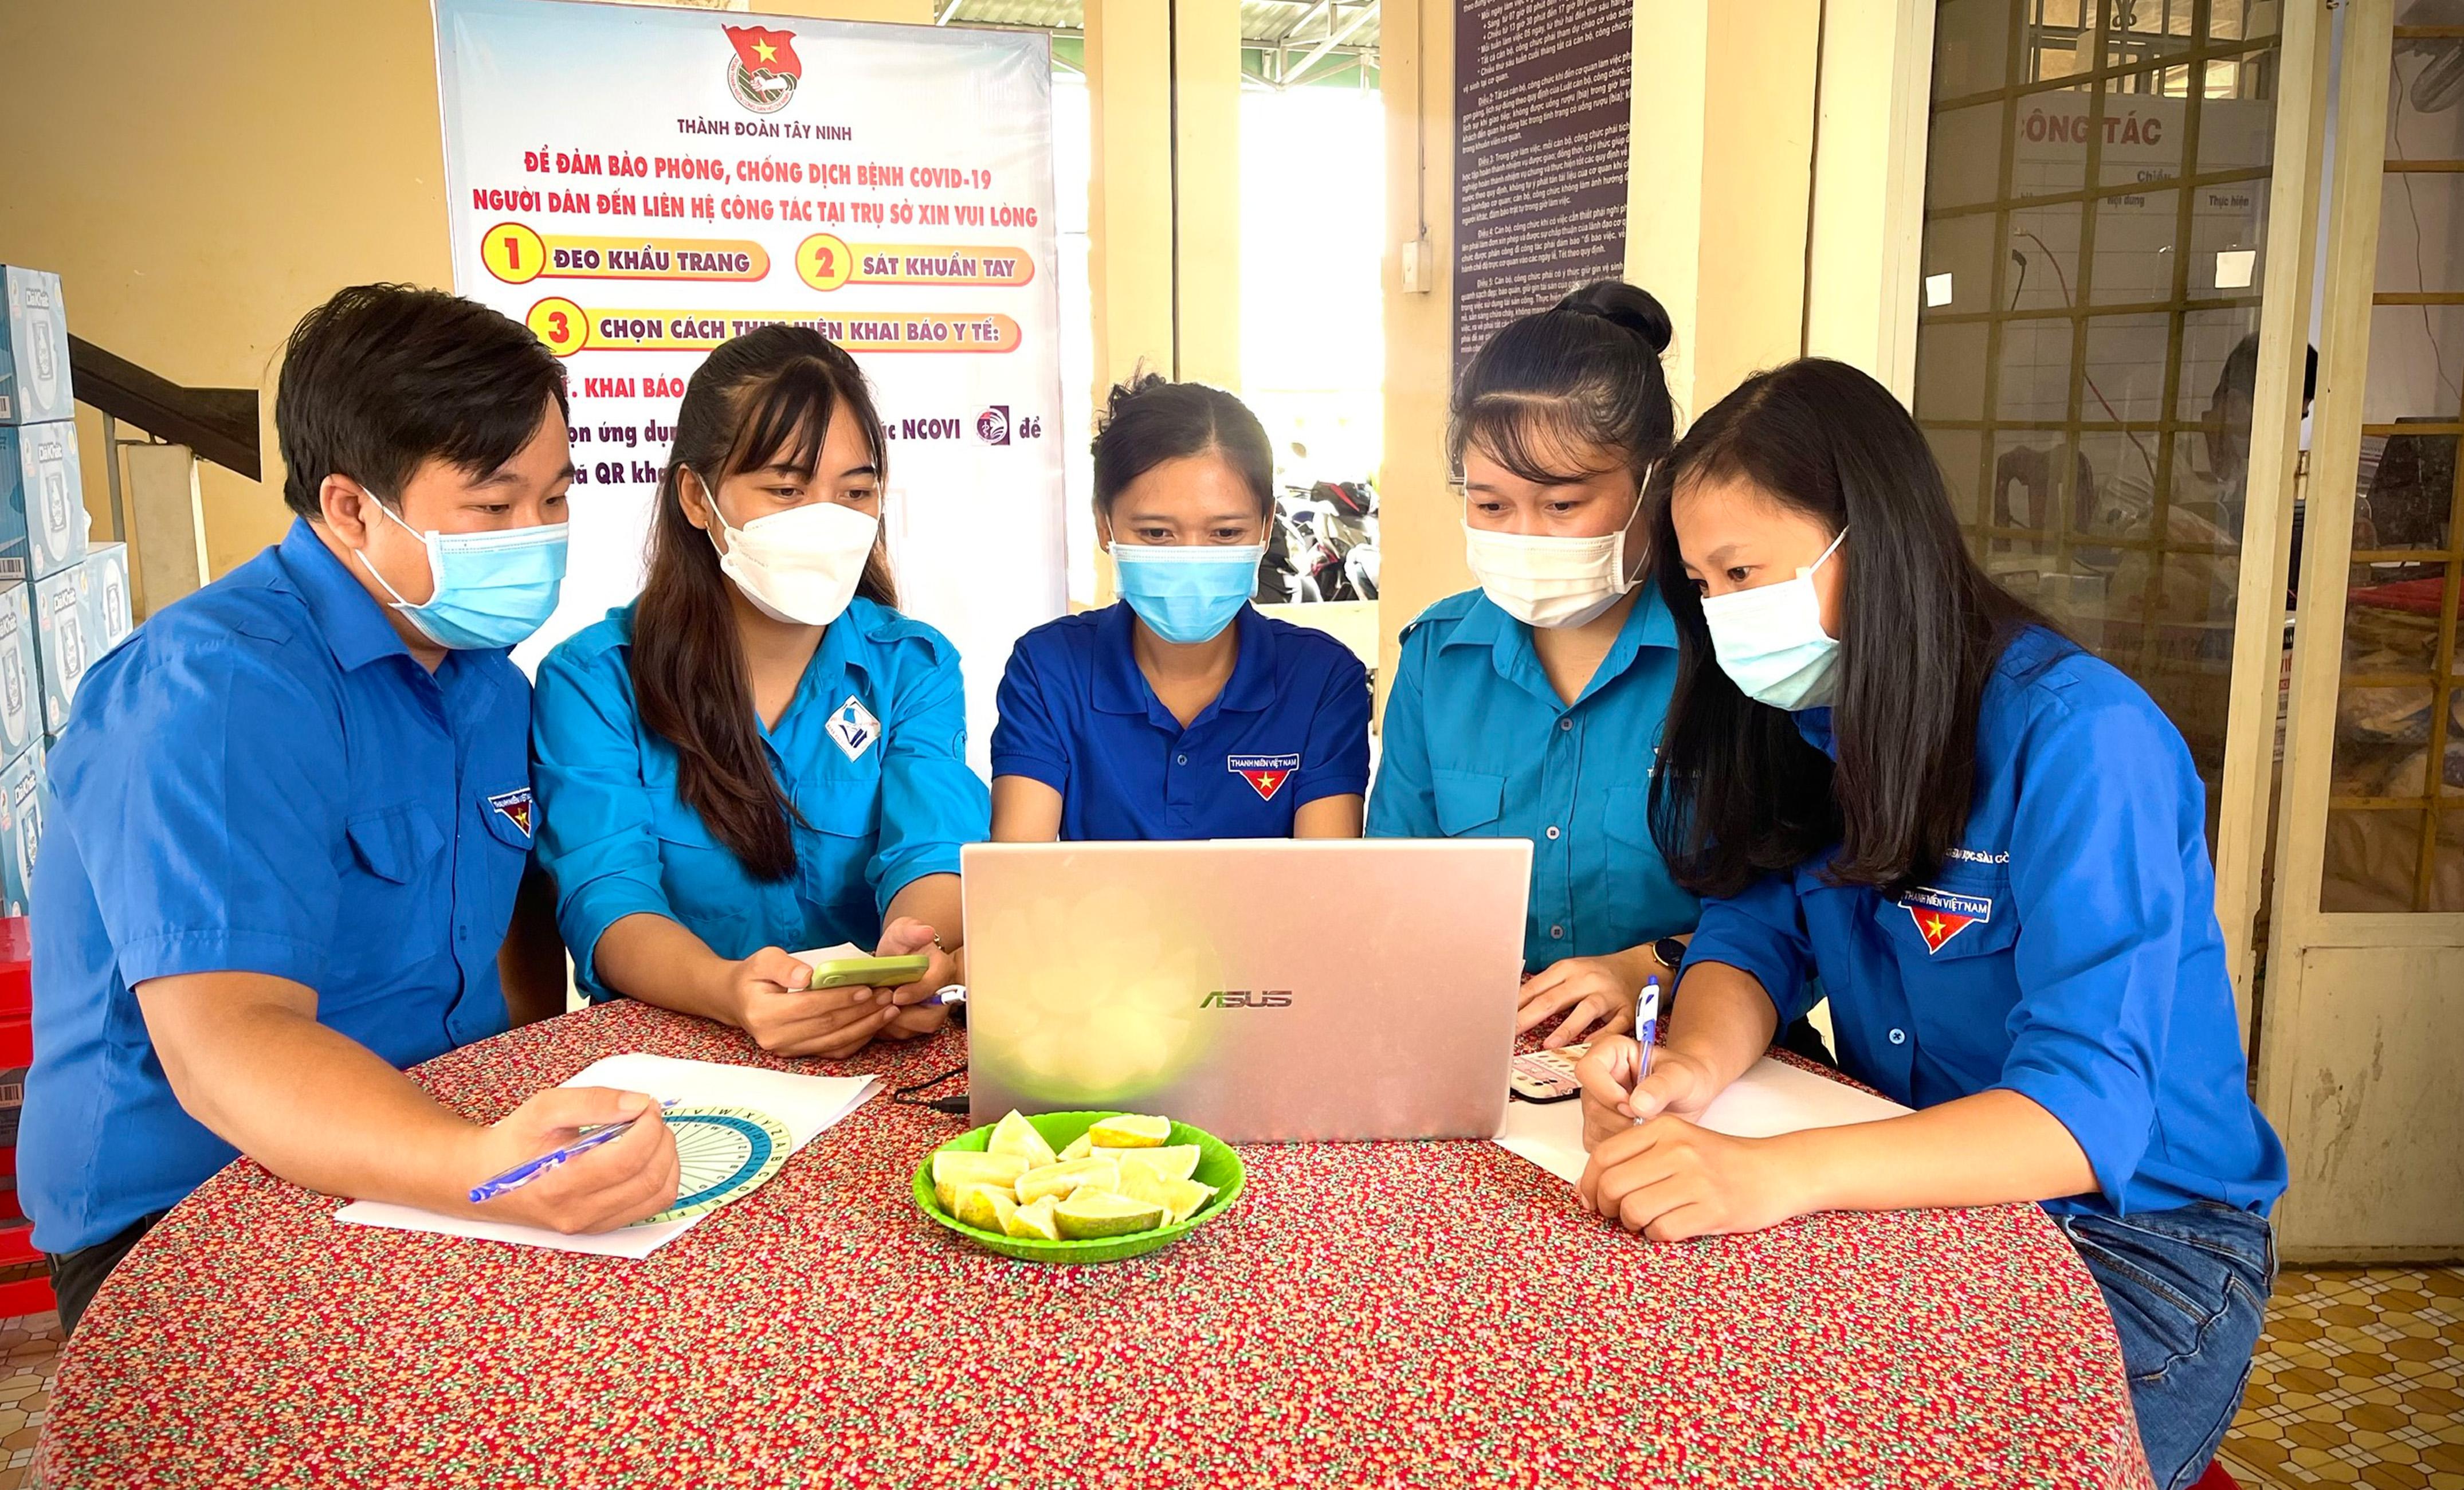 Hình ảnh sẽ cho bạn biết được những ứng dụng của công nghệ 4.0 đã được áp dụng ở Tây Ninh, giúp cho bạn hiểu rõ hơn về cách mà công nghệ này đang hỗ trợ cho sự phát triển kinh tế và xã hội của địa phương.